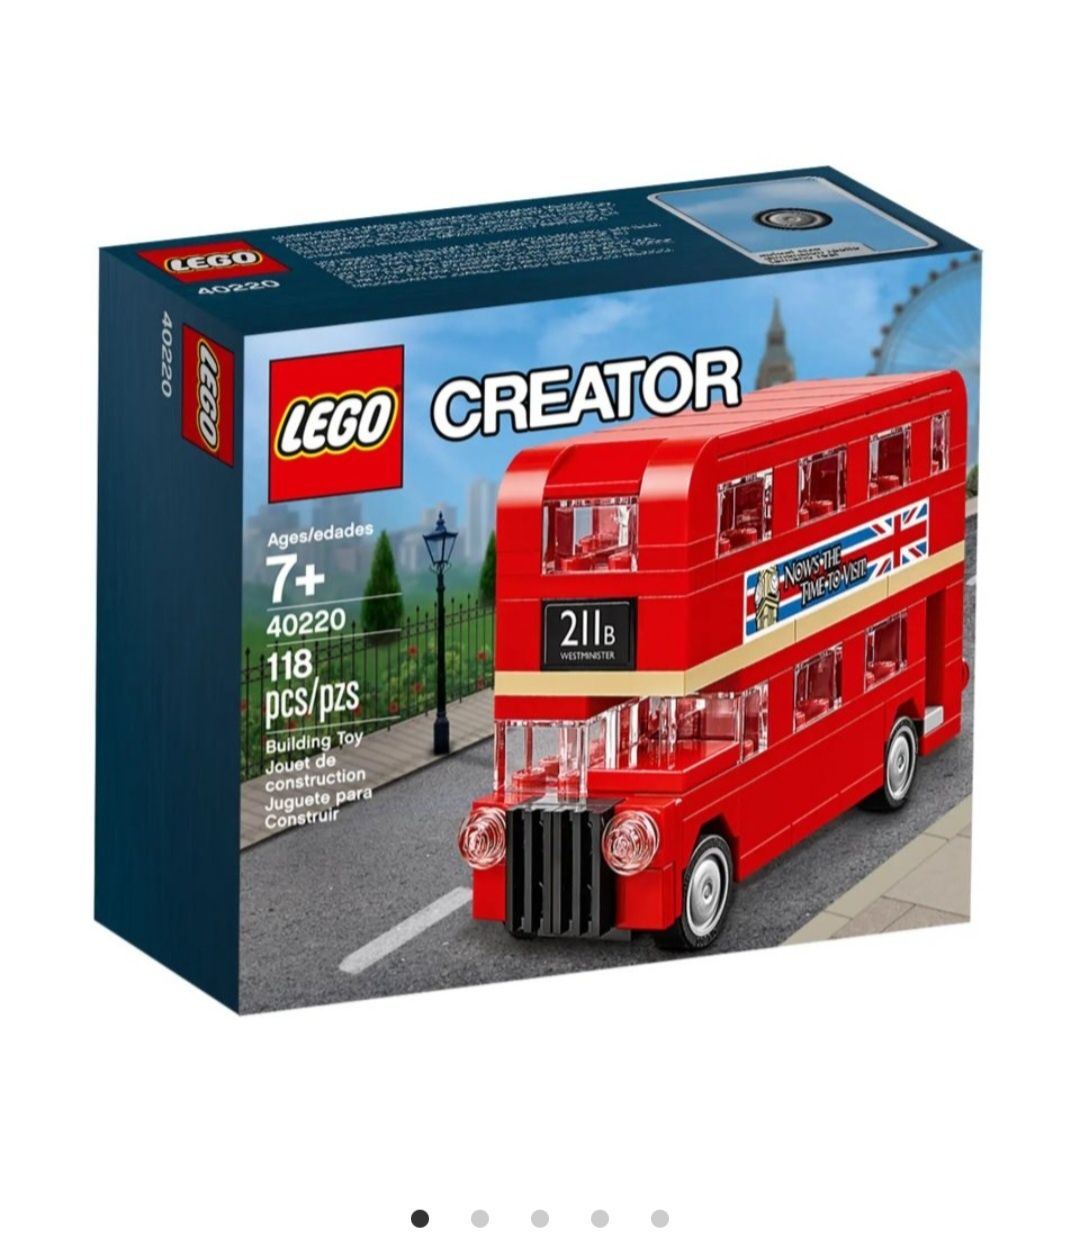 Lego tren de mare viteza si lego autobuz londonez(7+)